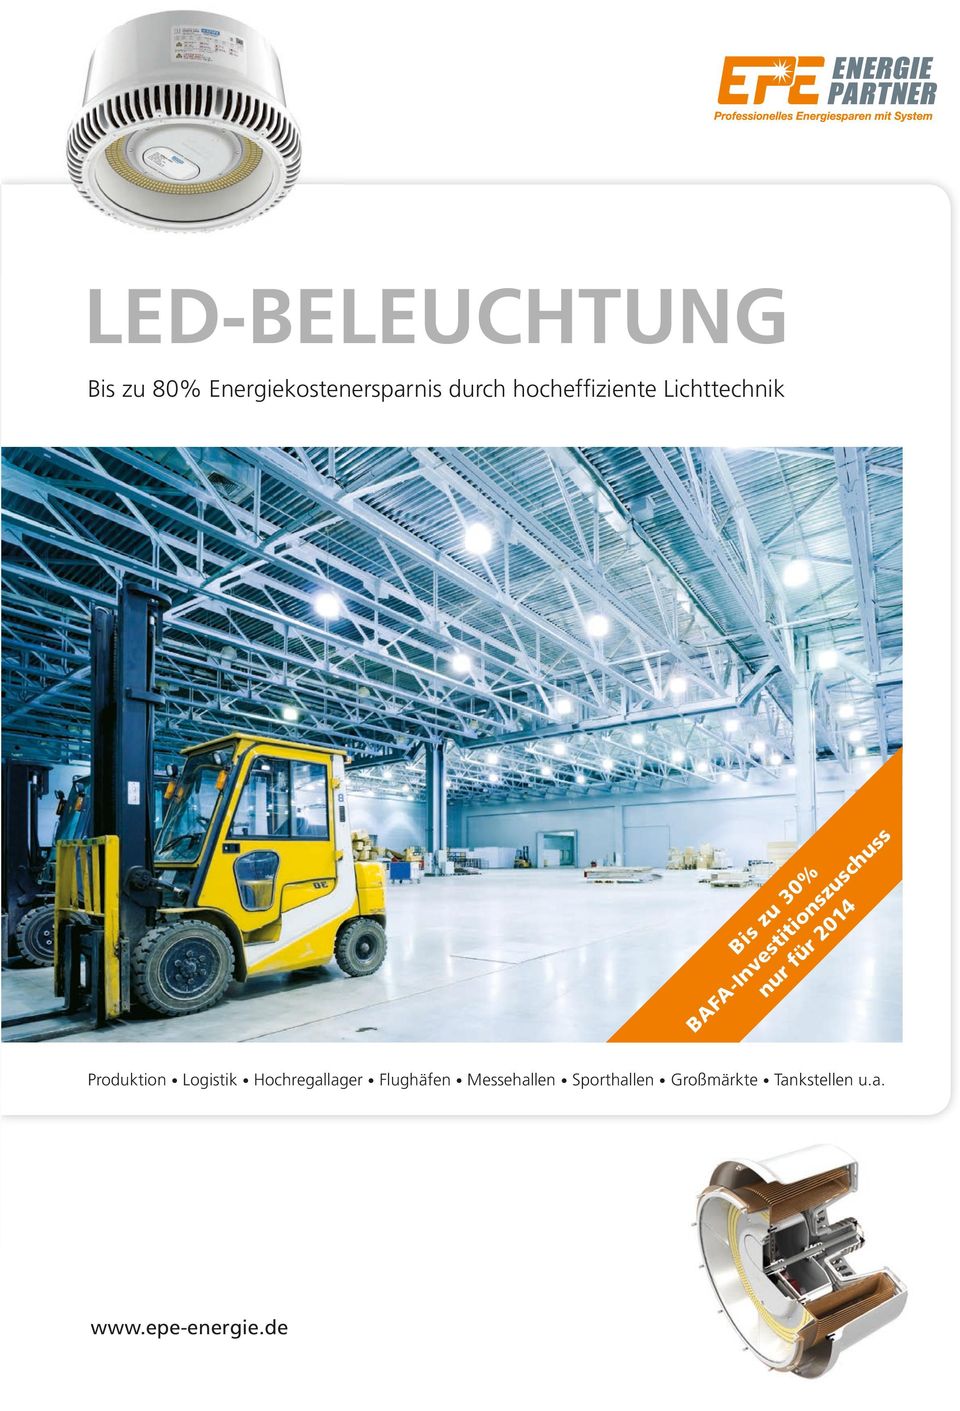 hocheffiziente Lichttechnik Produktion Logistik Hochregallager